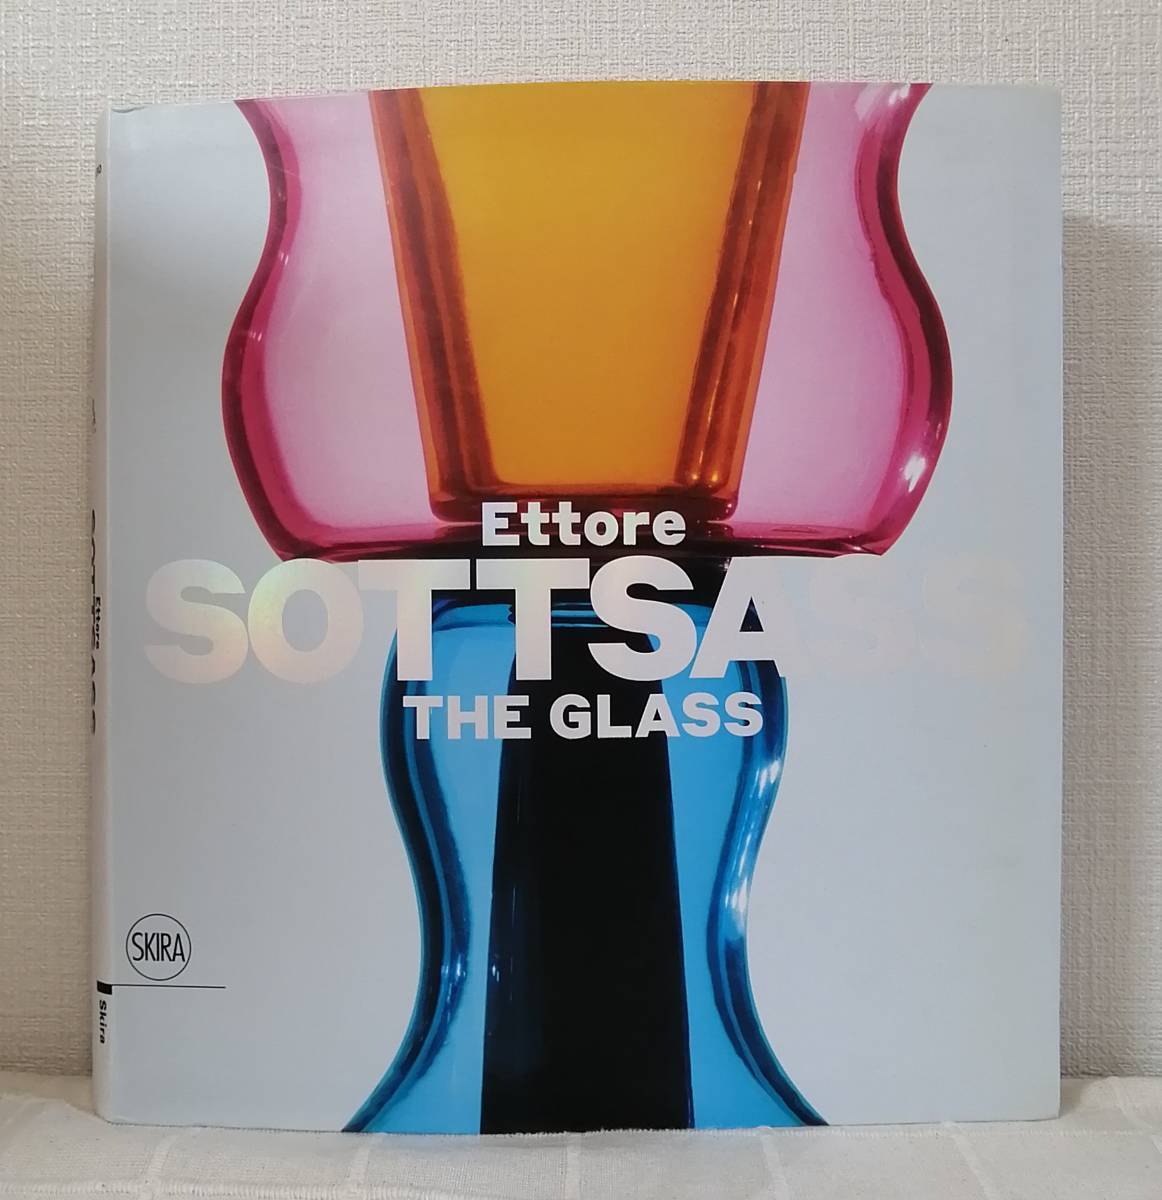 工■ エットレ・ソットサス ザ・グラス 洋書作品集 Luca Massimo Barbero Ettore Sottsass: The Glass Skira